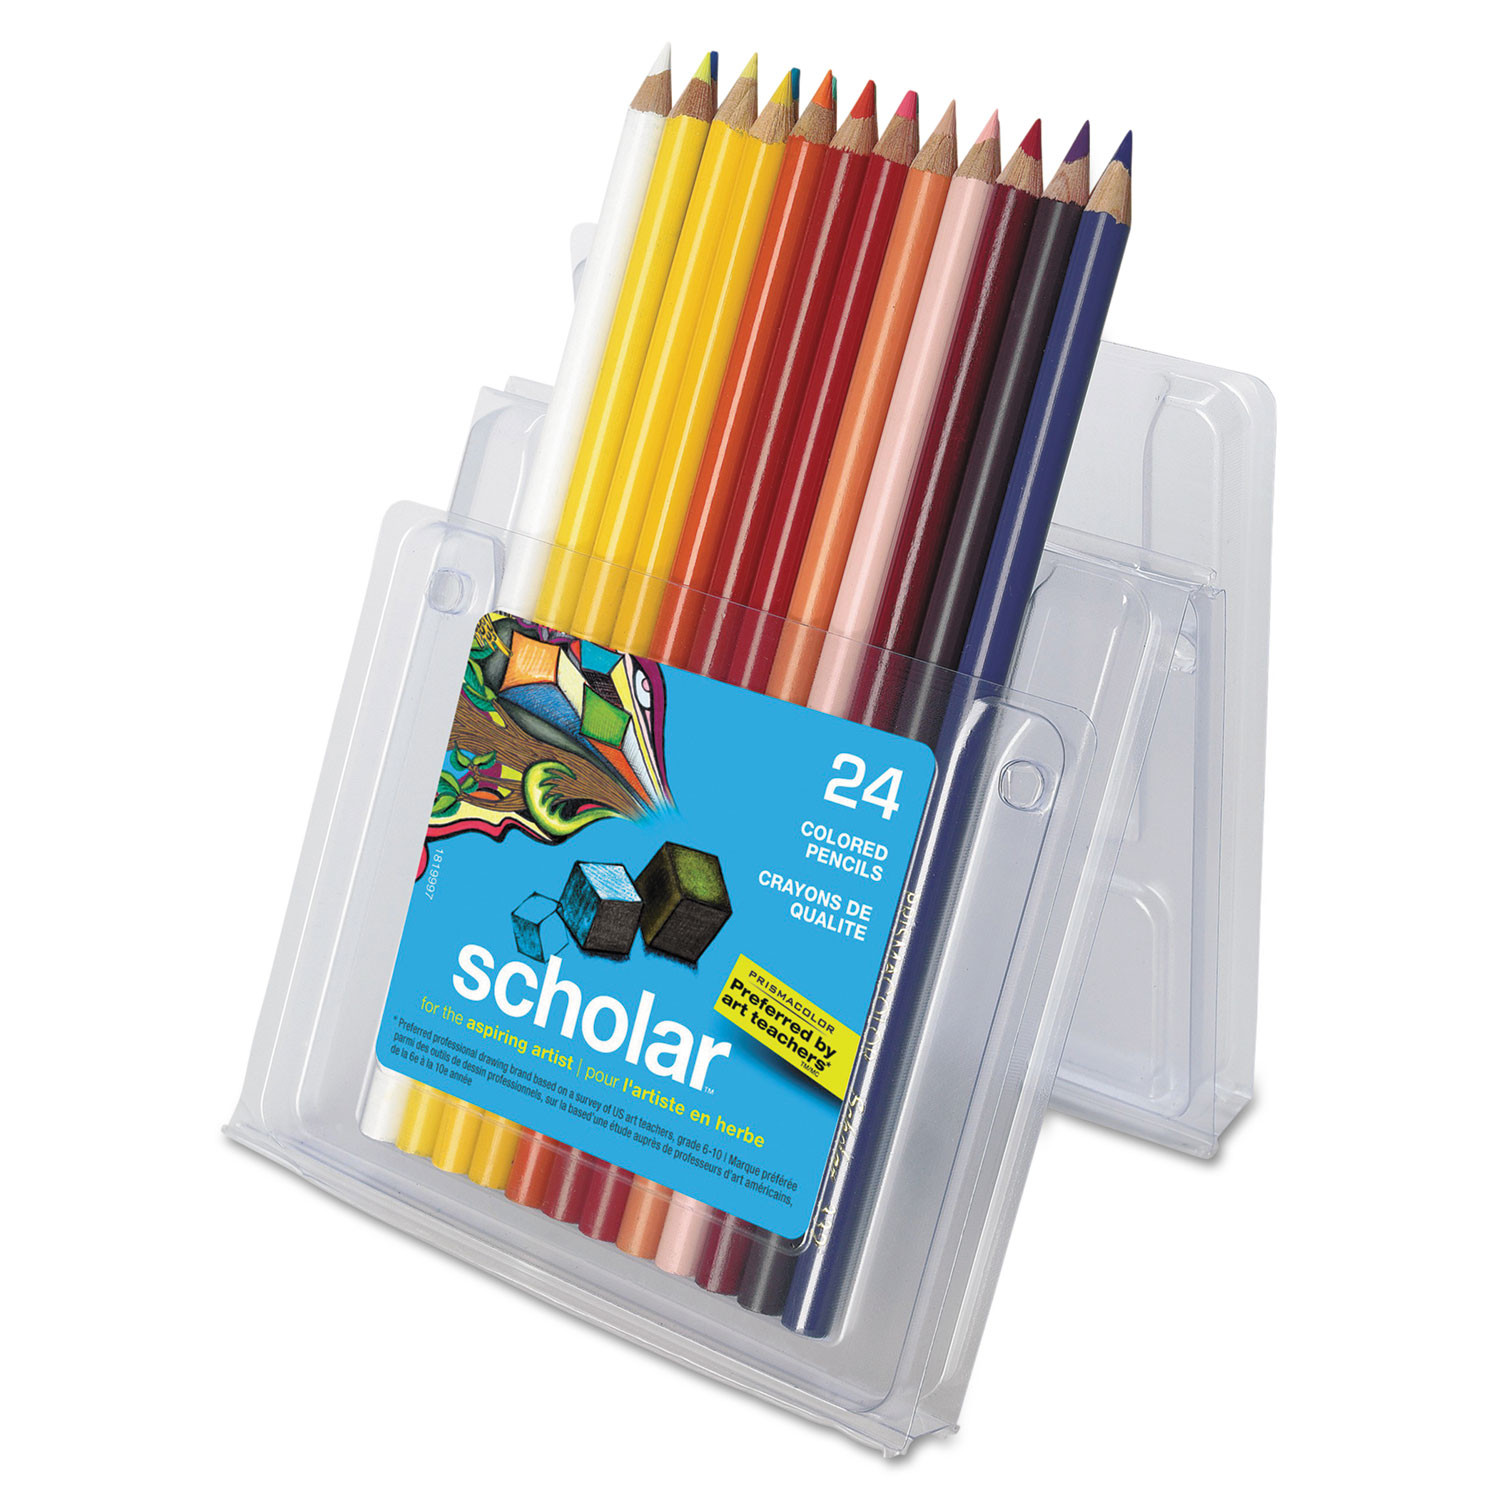 Prismacolor Scholar Colored Pencil Set, 24-Colors